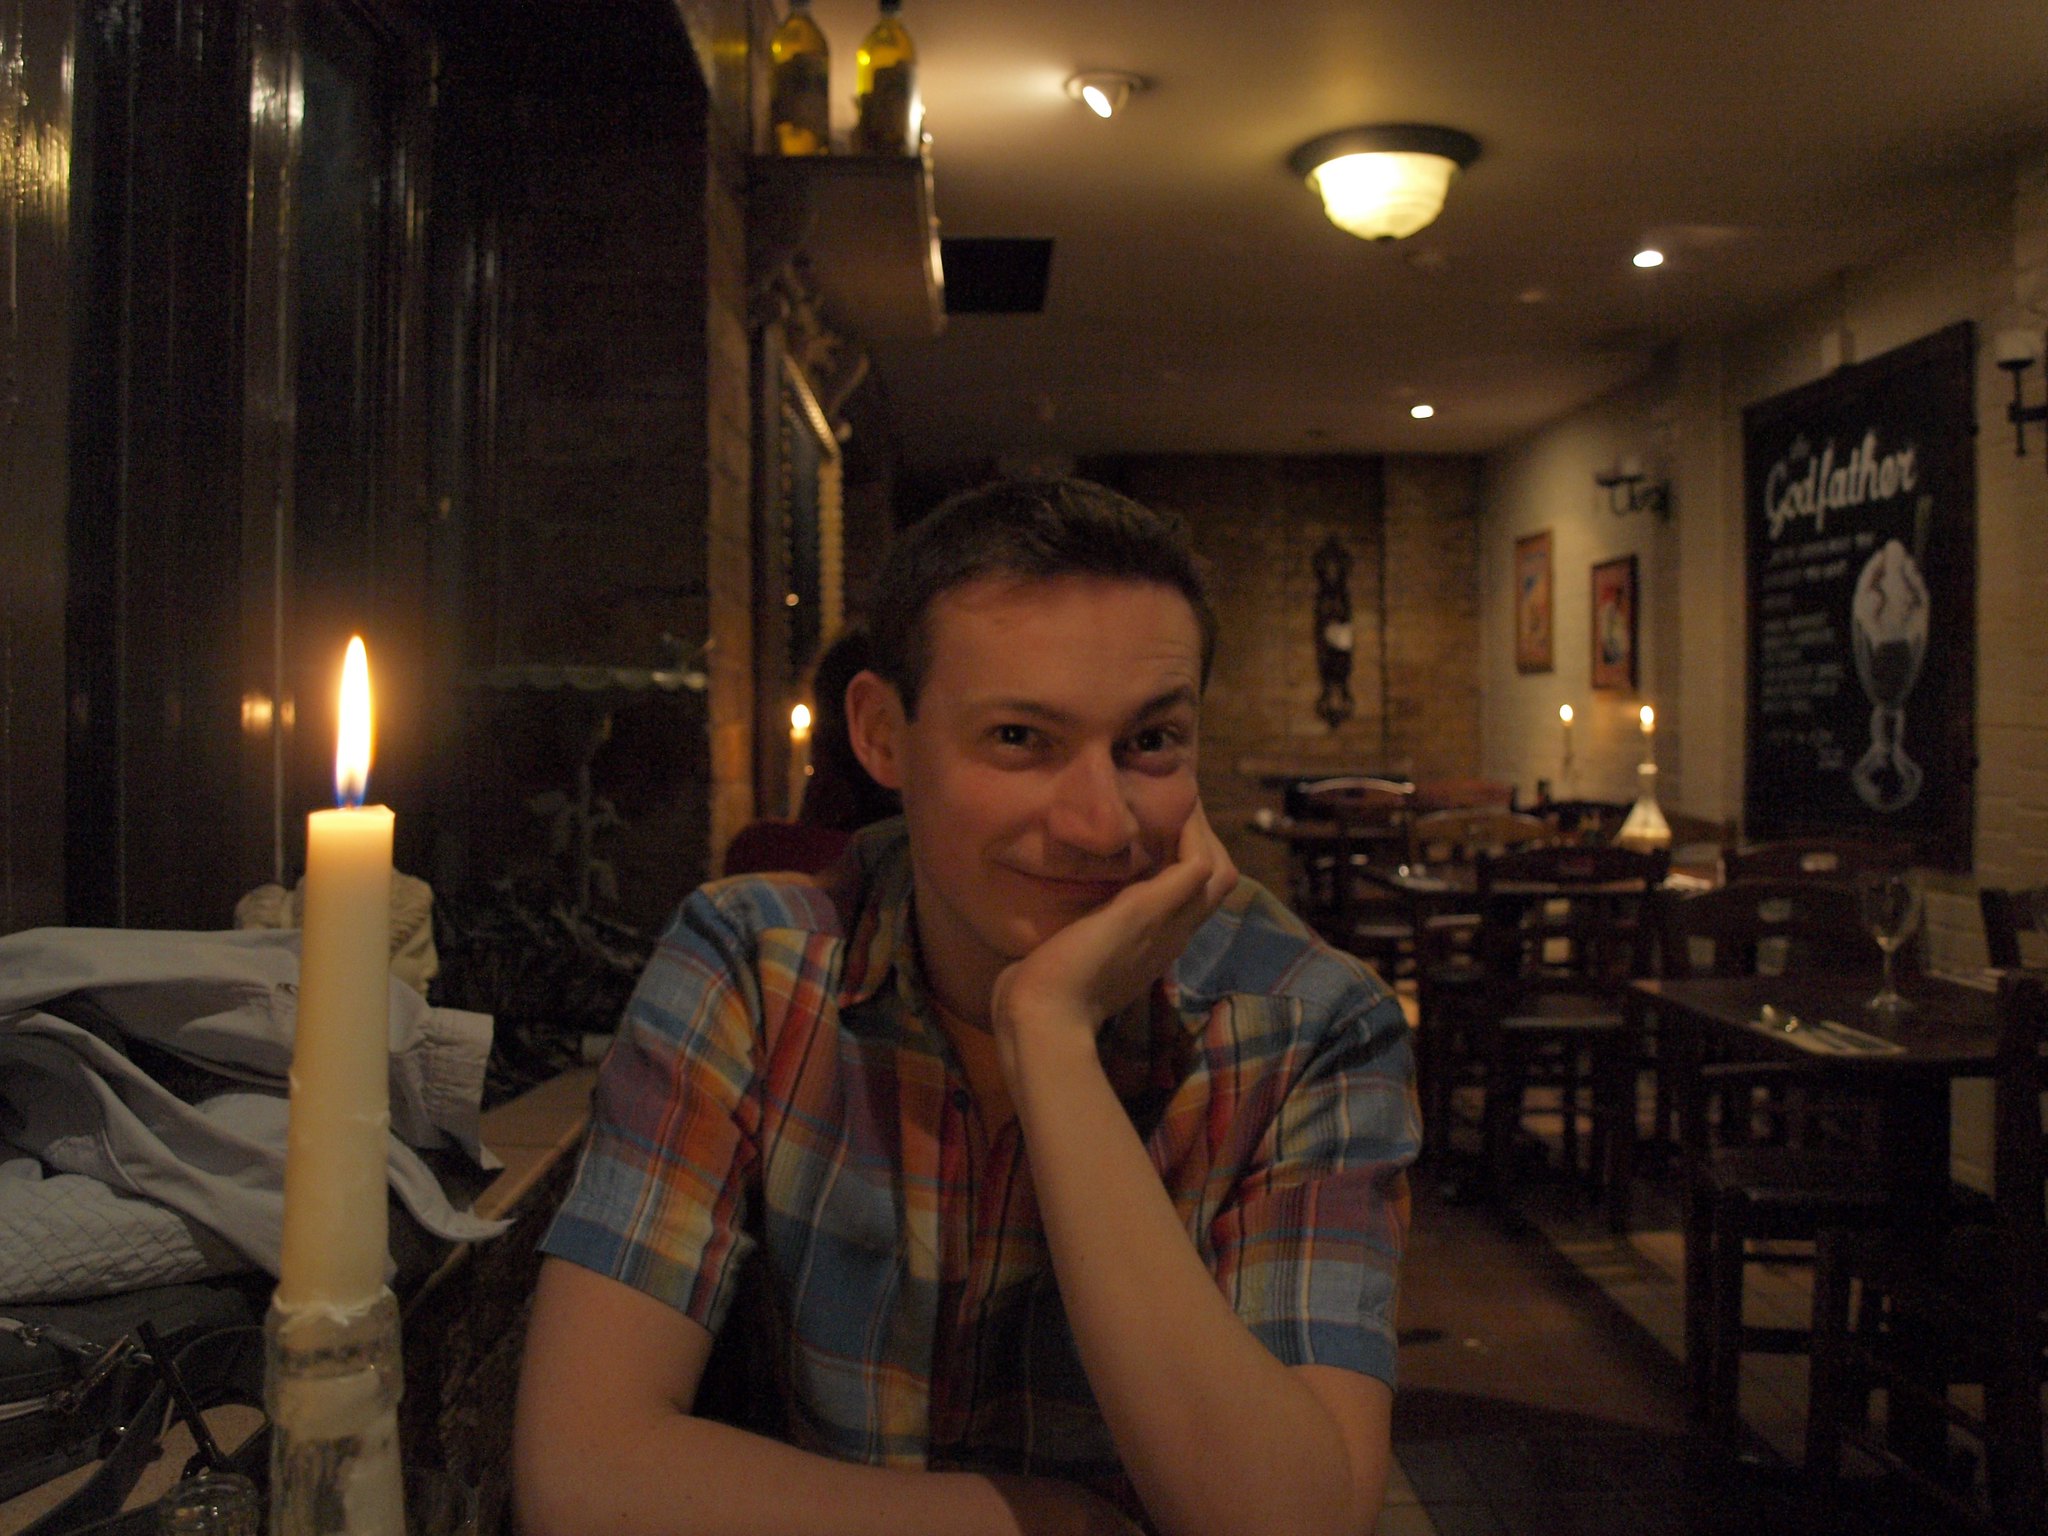 Ein Mann lächelt und sieht glücklich aus, während er in einem Restaurant fotografiert wird | Quelle: Flickr